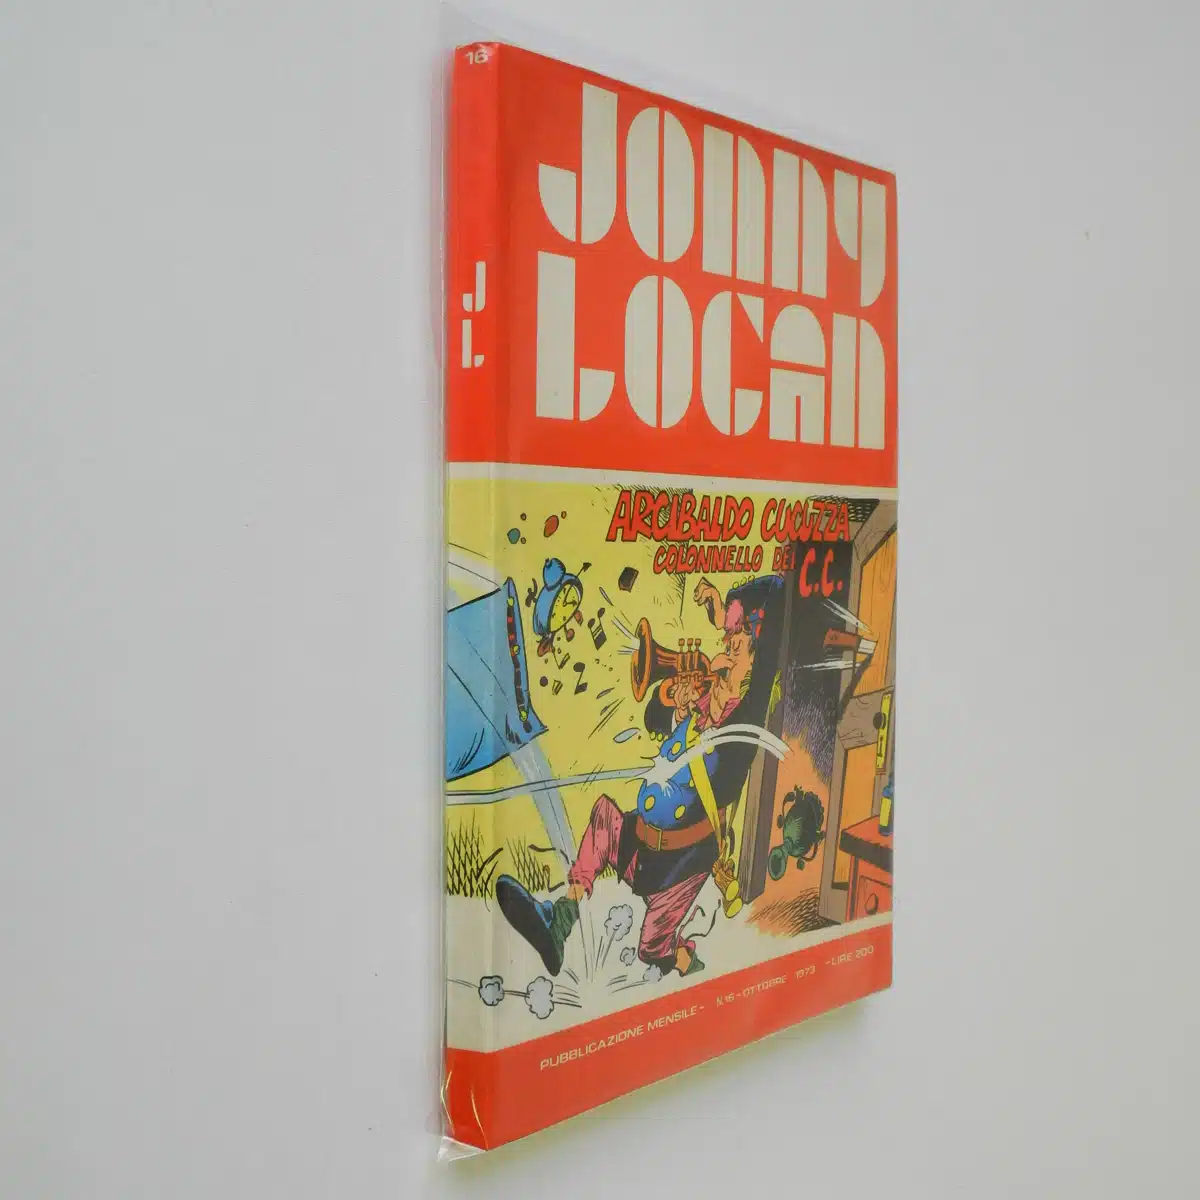 Jonny Logan n. 16 Arcibaldo Cucuzza colonnello dei c.c.